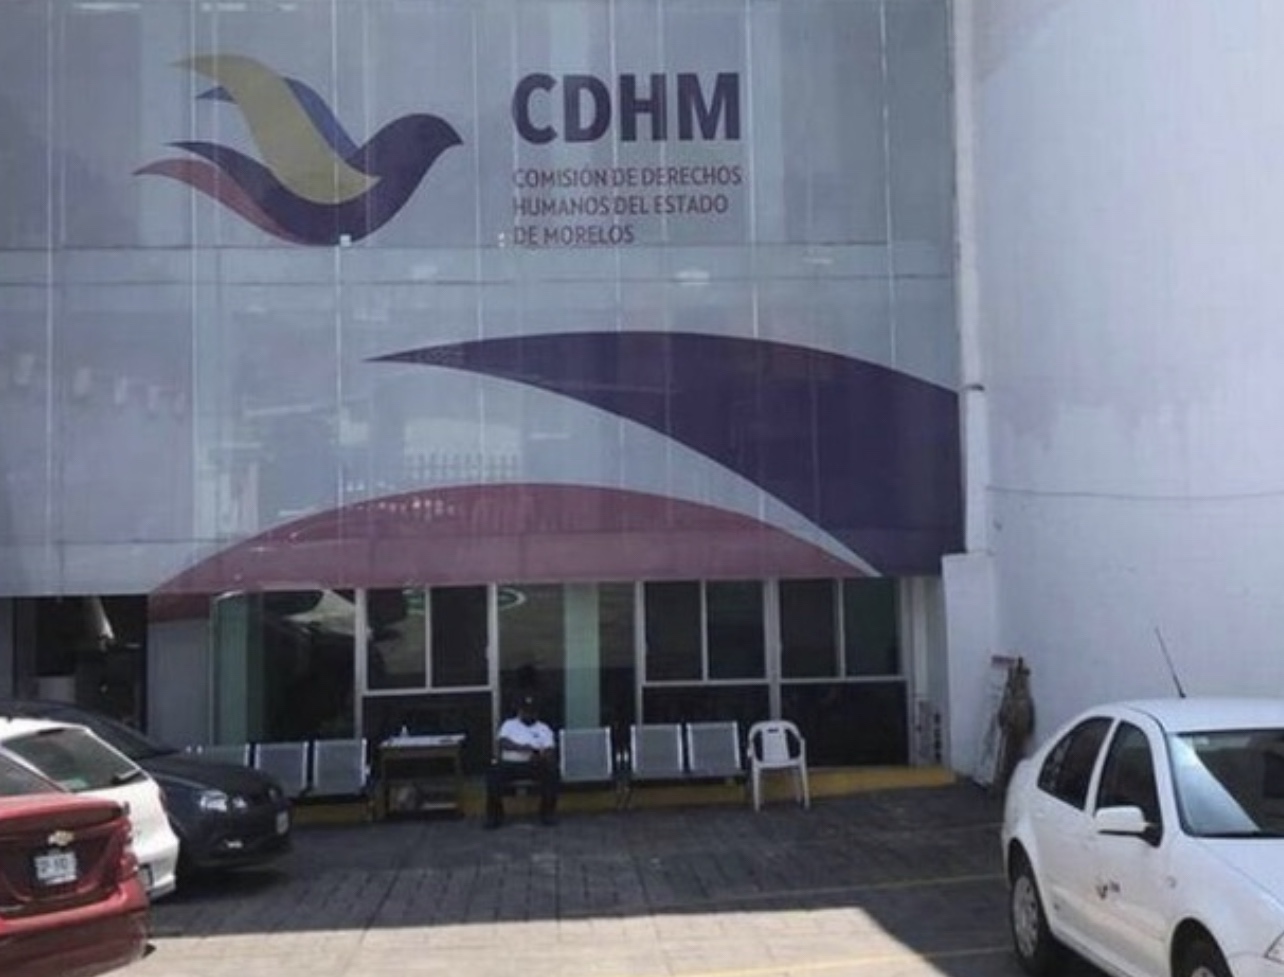 Presenta queja CDHEM contra Cuernavaca y CFE por falta de agua